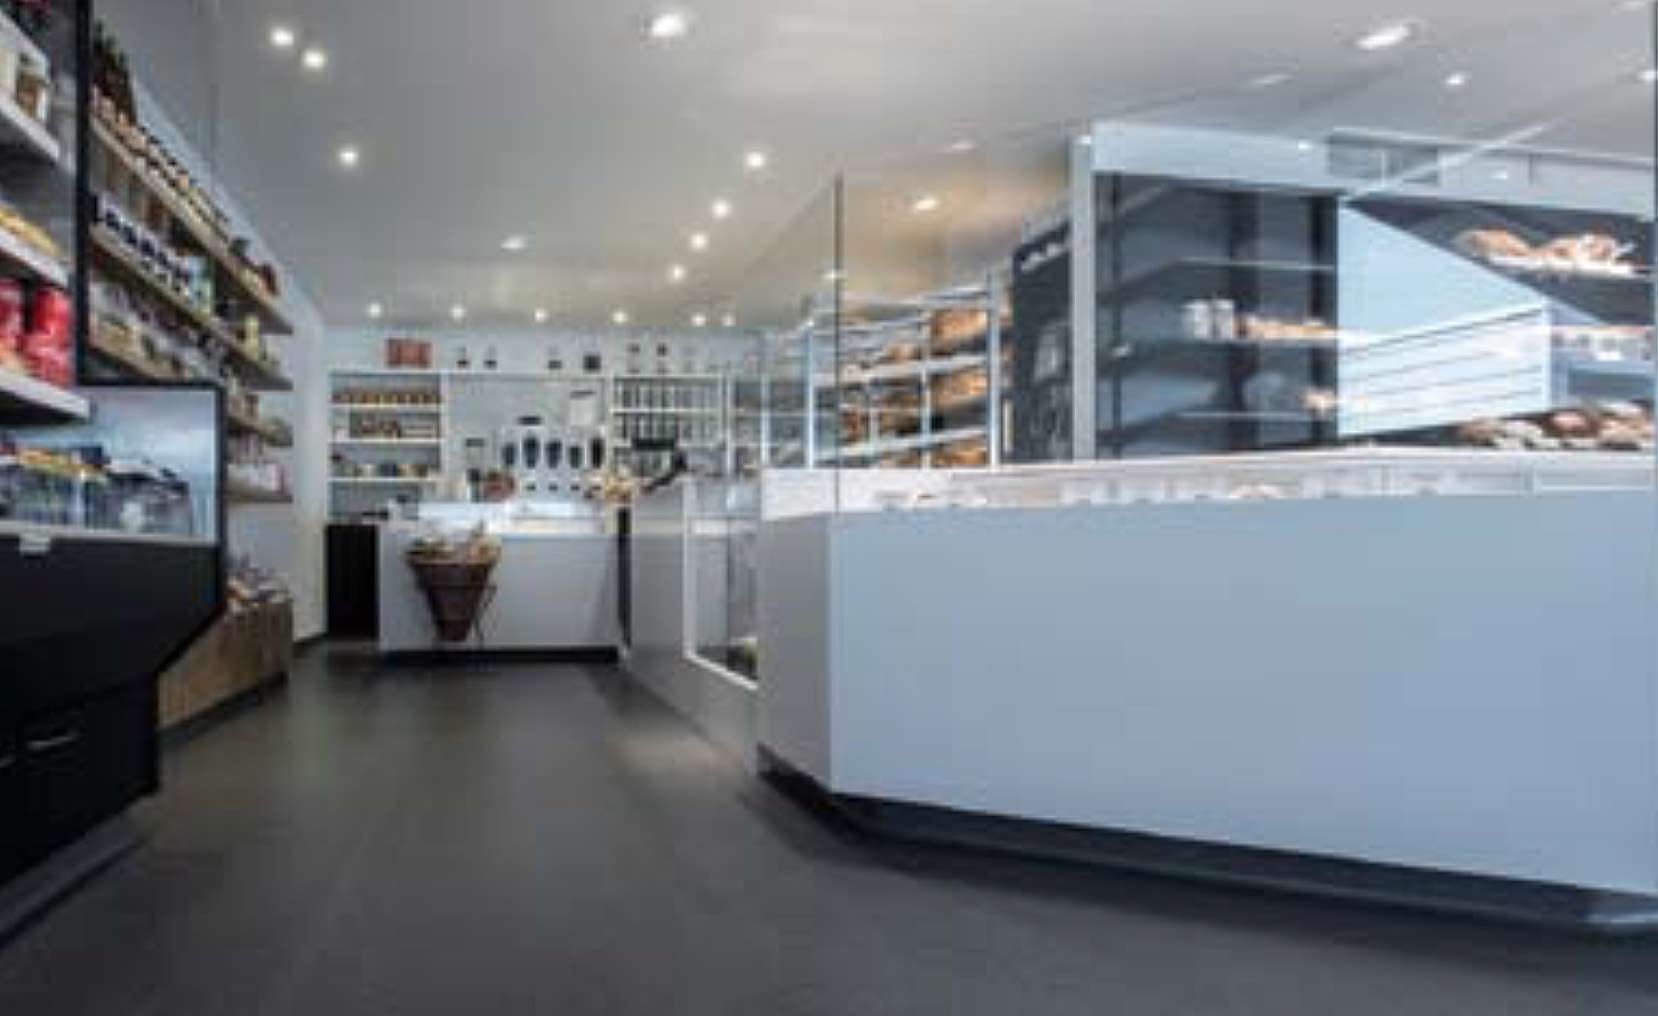 Devafloor: sol coulé en acrylate à la boulangerie Copain & Co Zonhoven